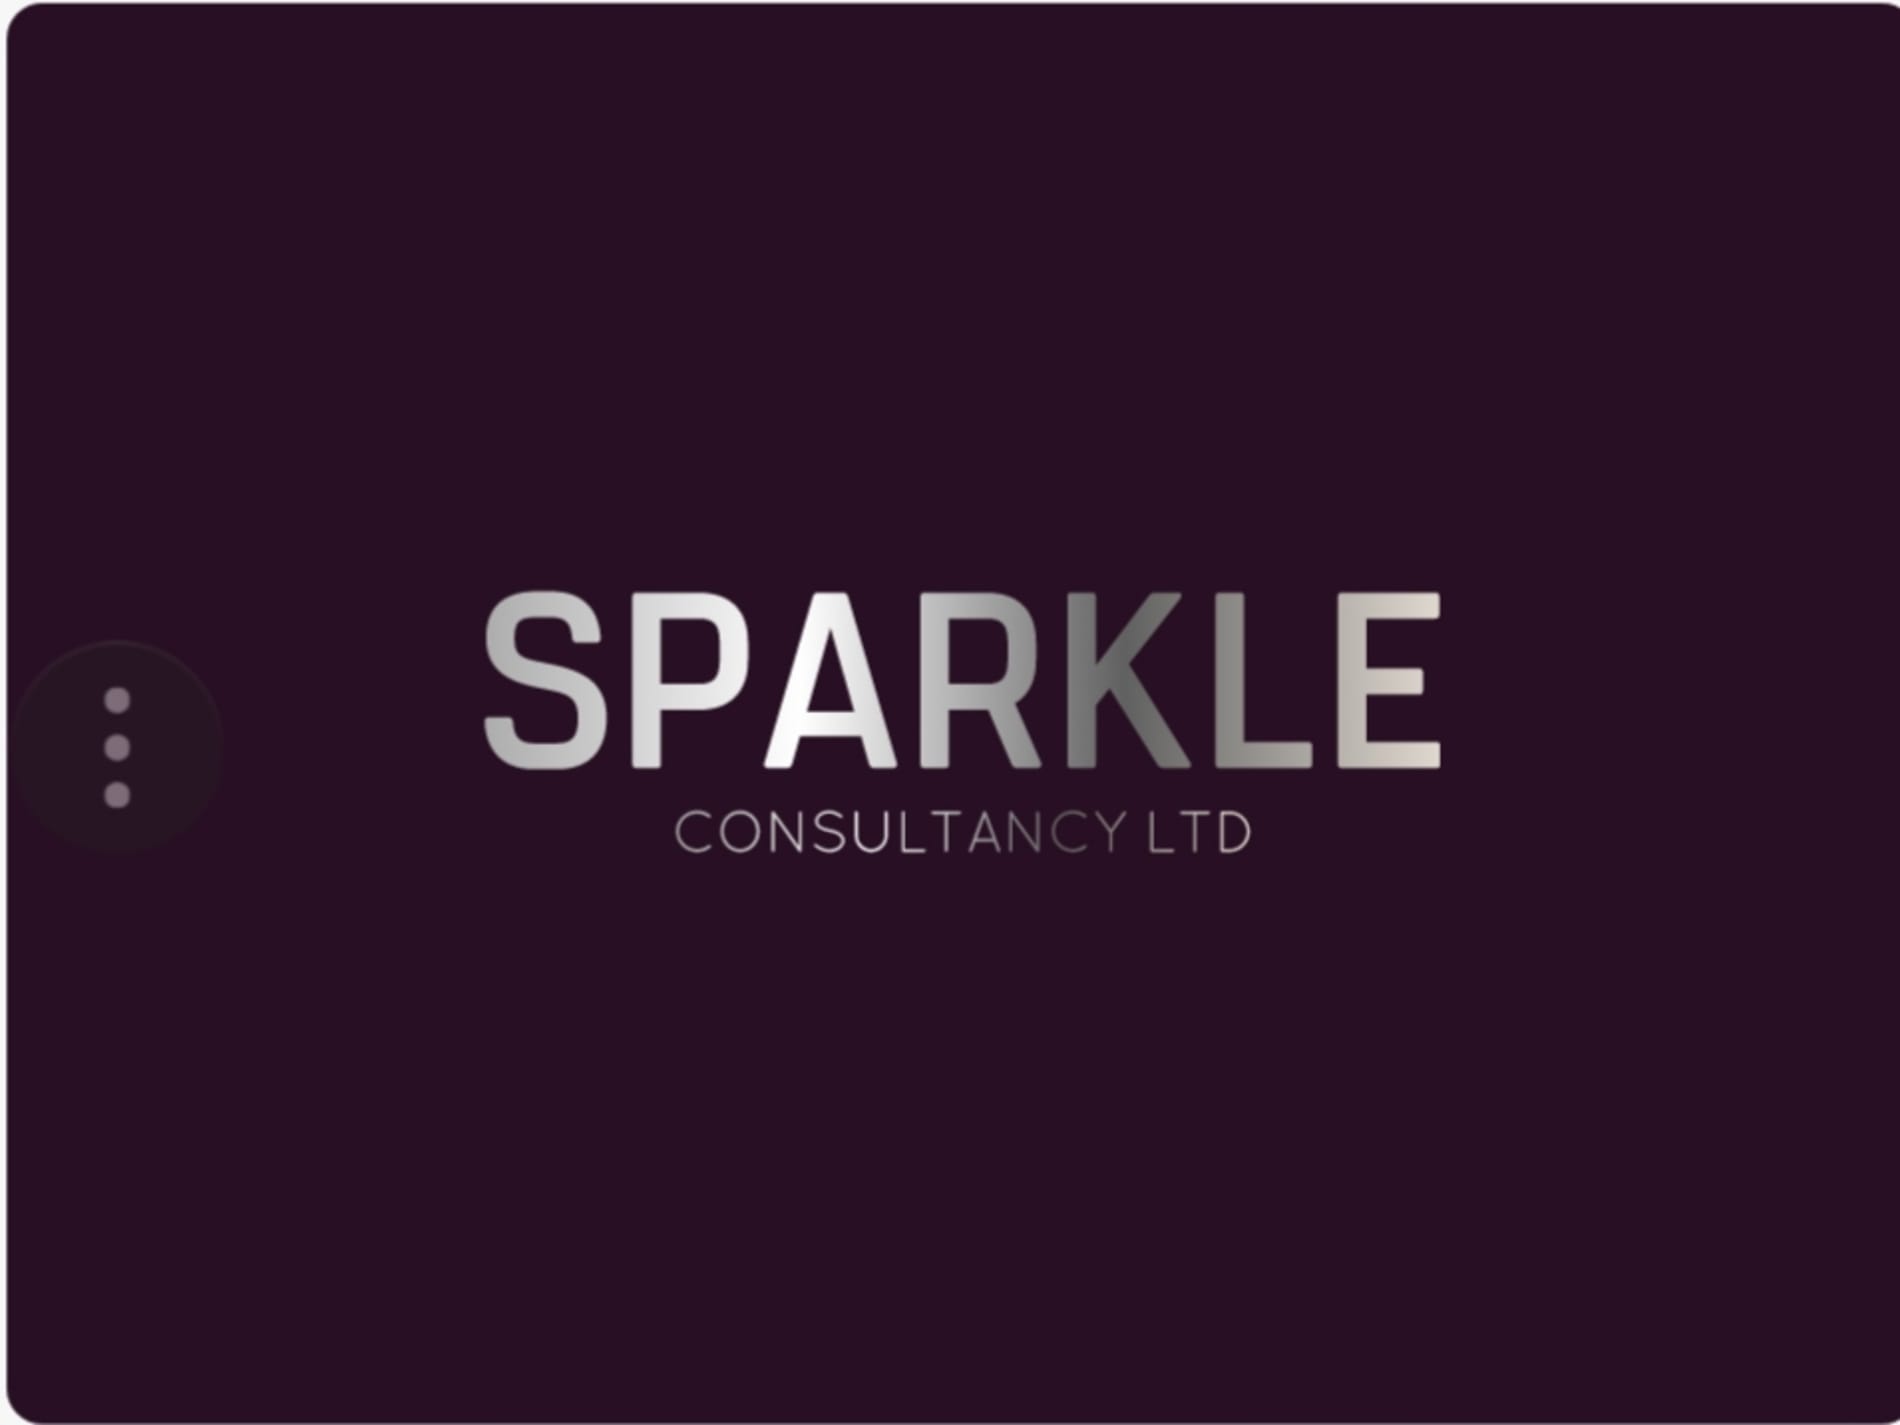 Sparkle Consultancy Ltd